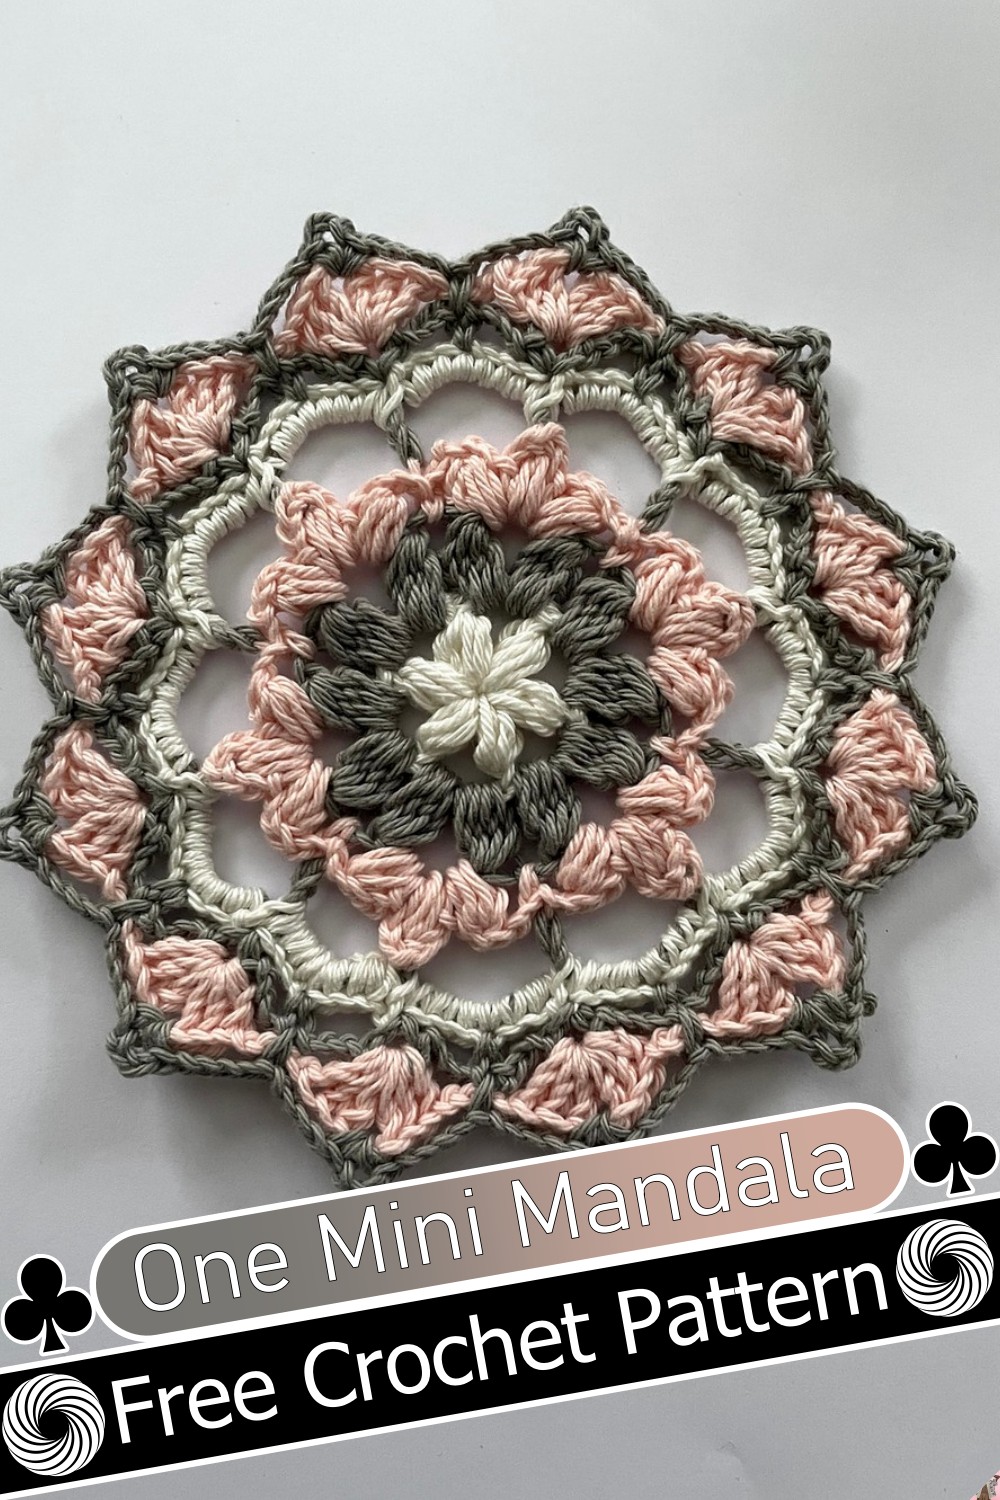 One Mini Mandala